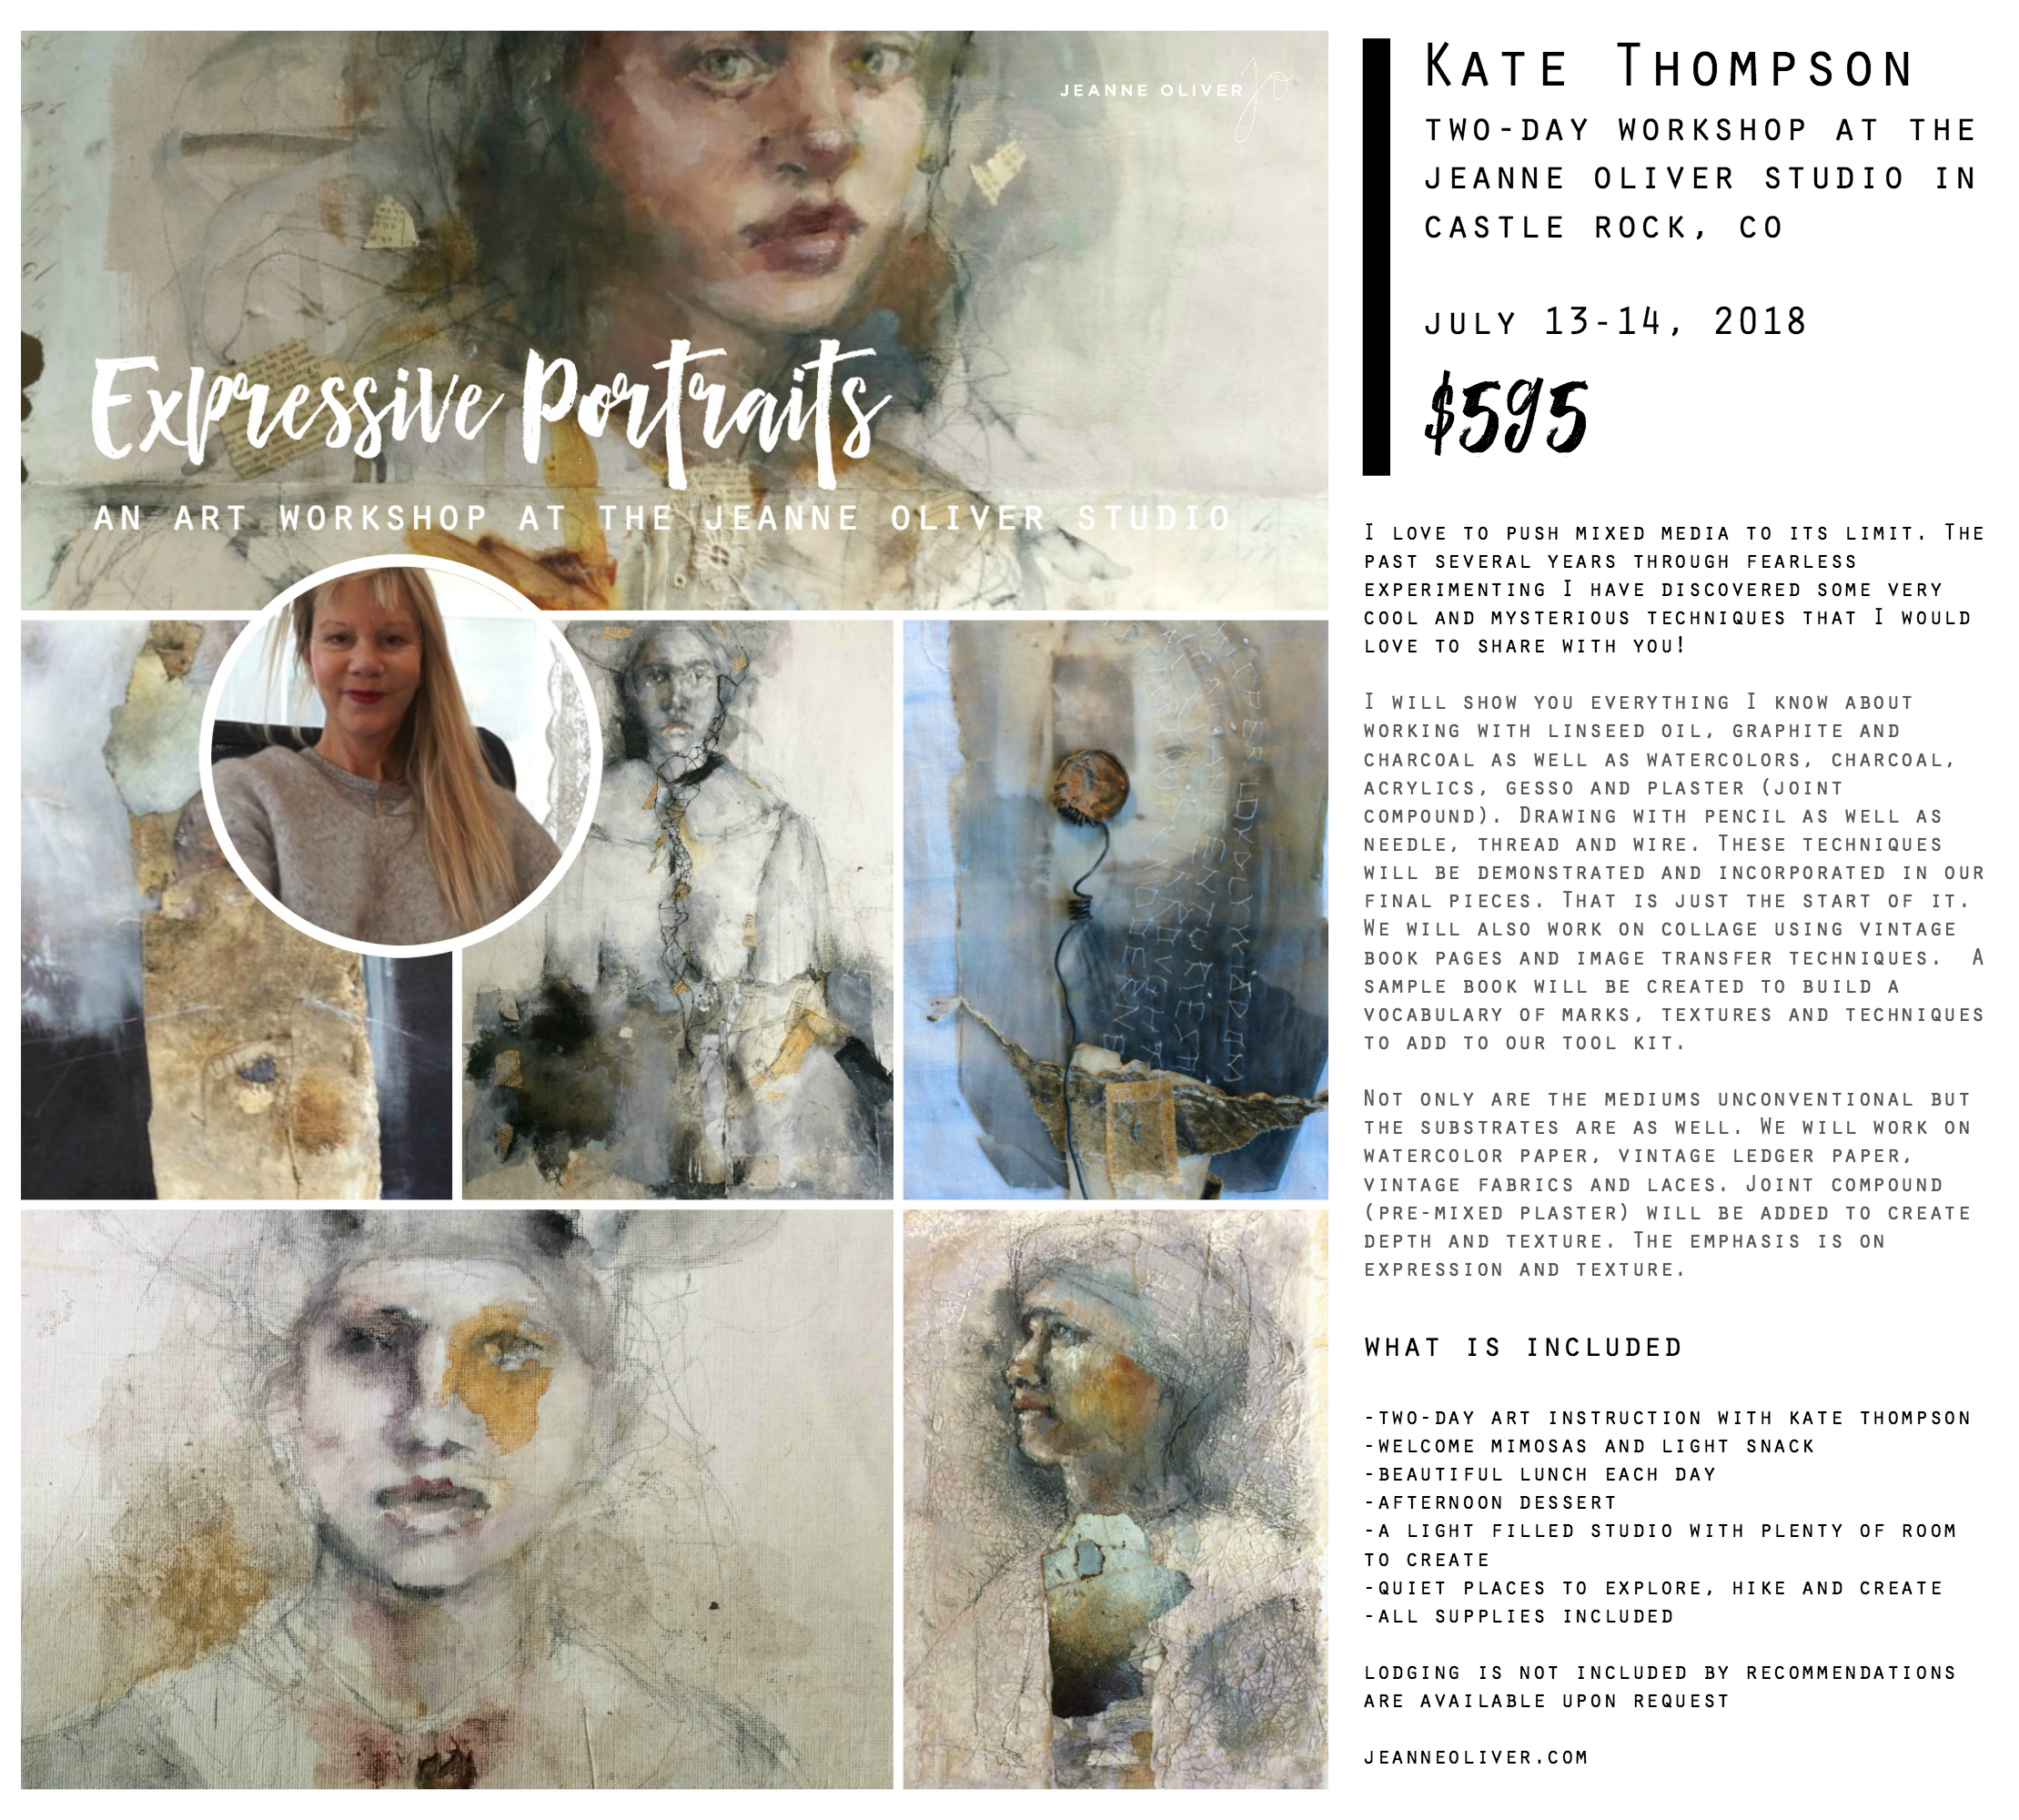 Kate Thompson Expressive Portraits | Jeanne Oliver Studio 2018